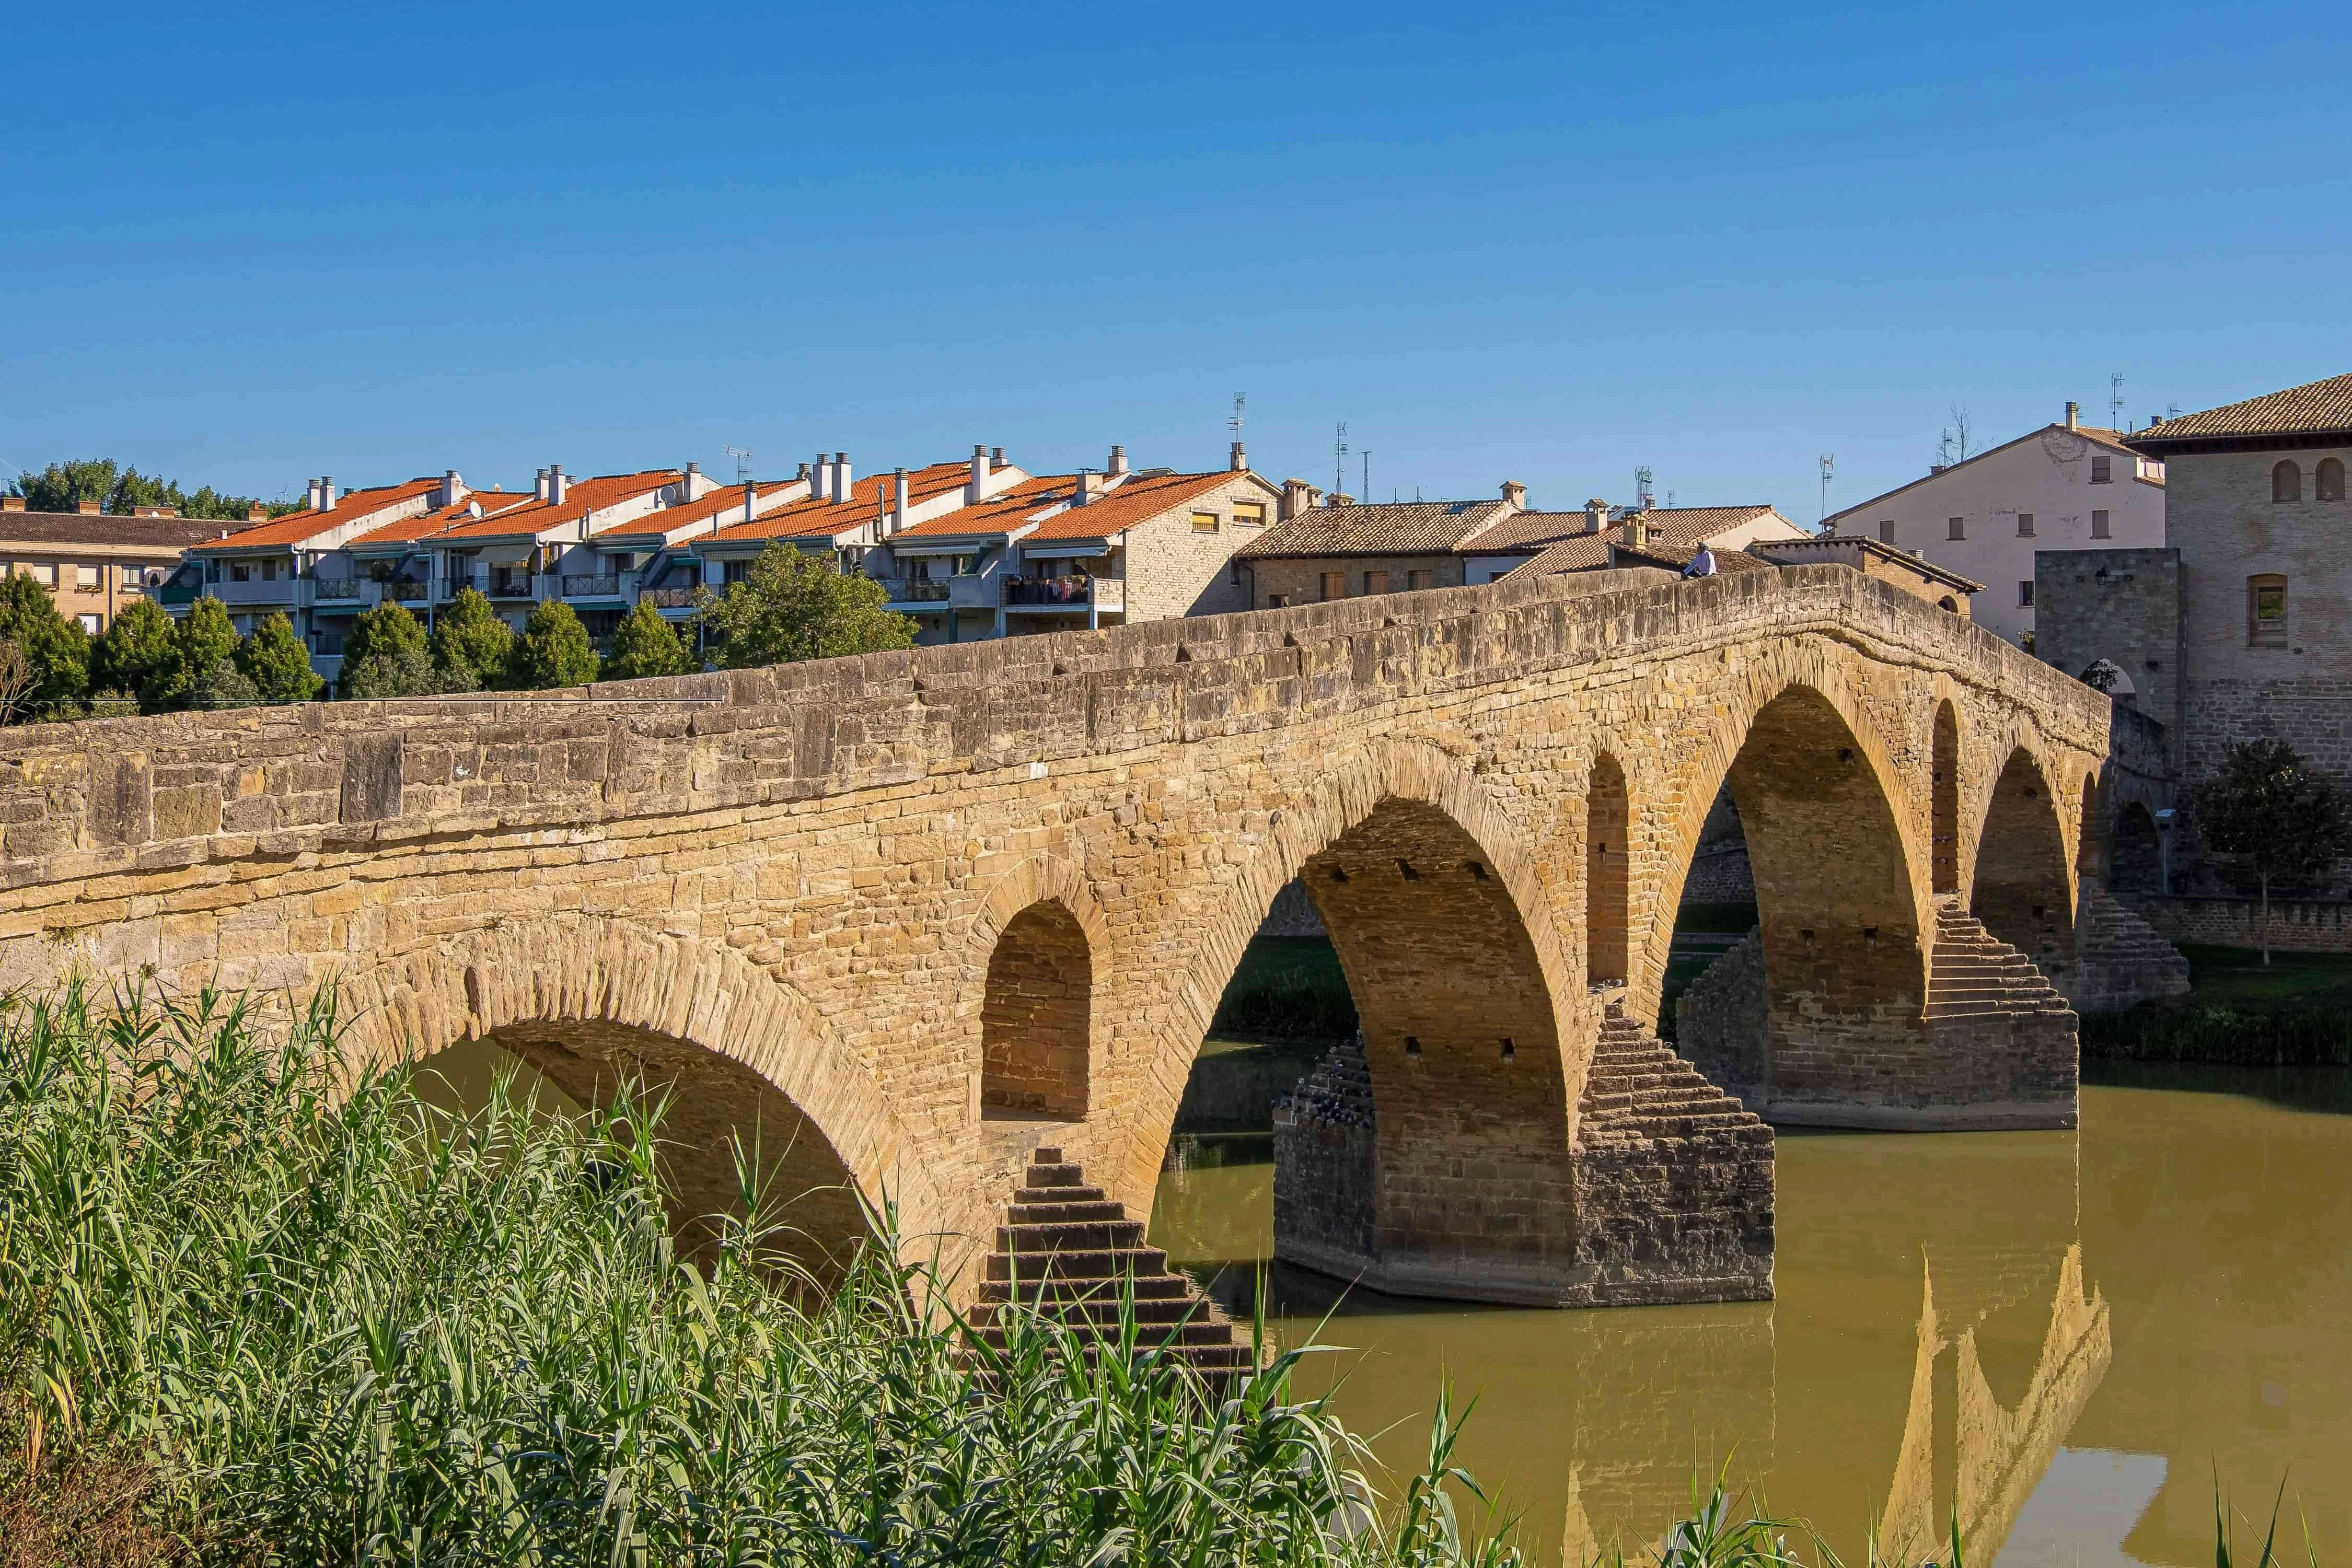 【西班牙Spain】puente La Reina鎮上美麗的羅馬式橋梁，傳說是11世紀時由當時的皇后為朝聖者興建的，所以此鎮又被稱為「皇后橋鎮」。© Burkard Meyendriesch／unsplash Tuya Tuya Tuya